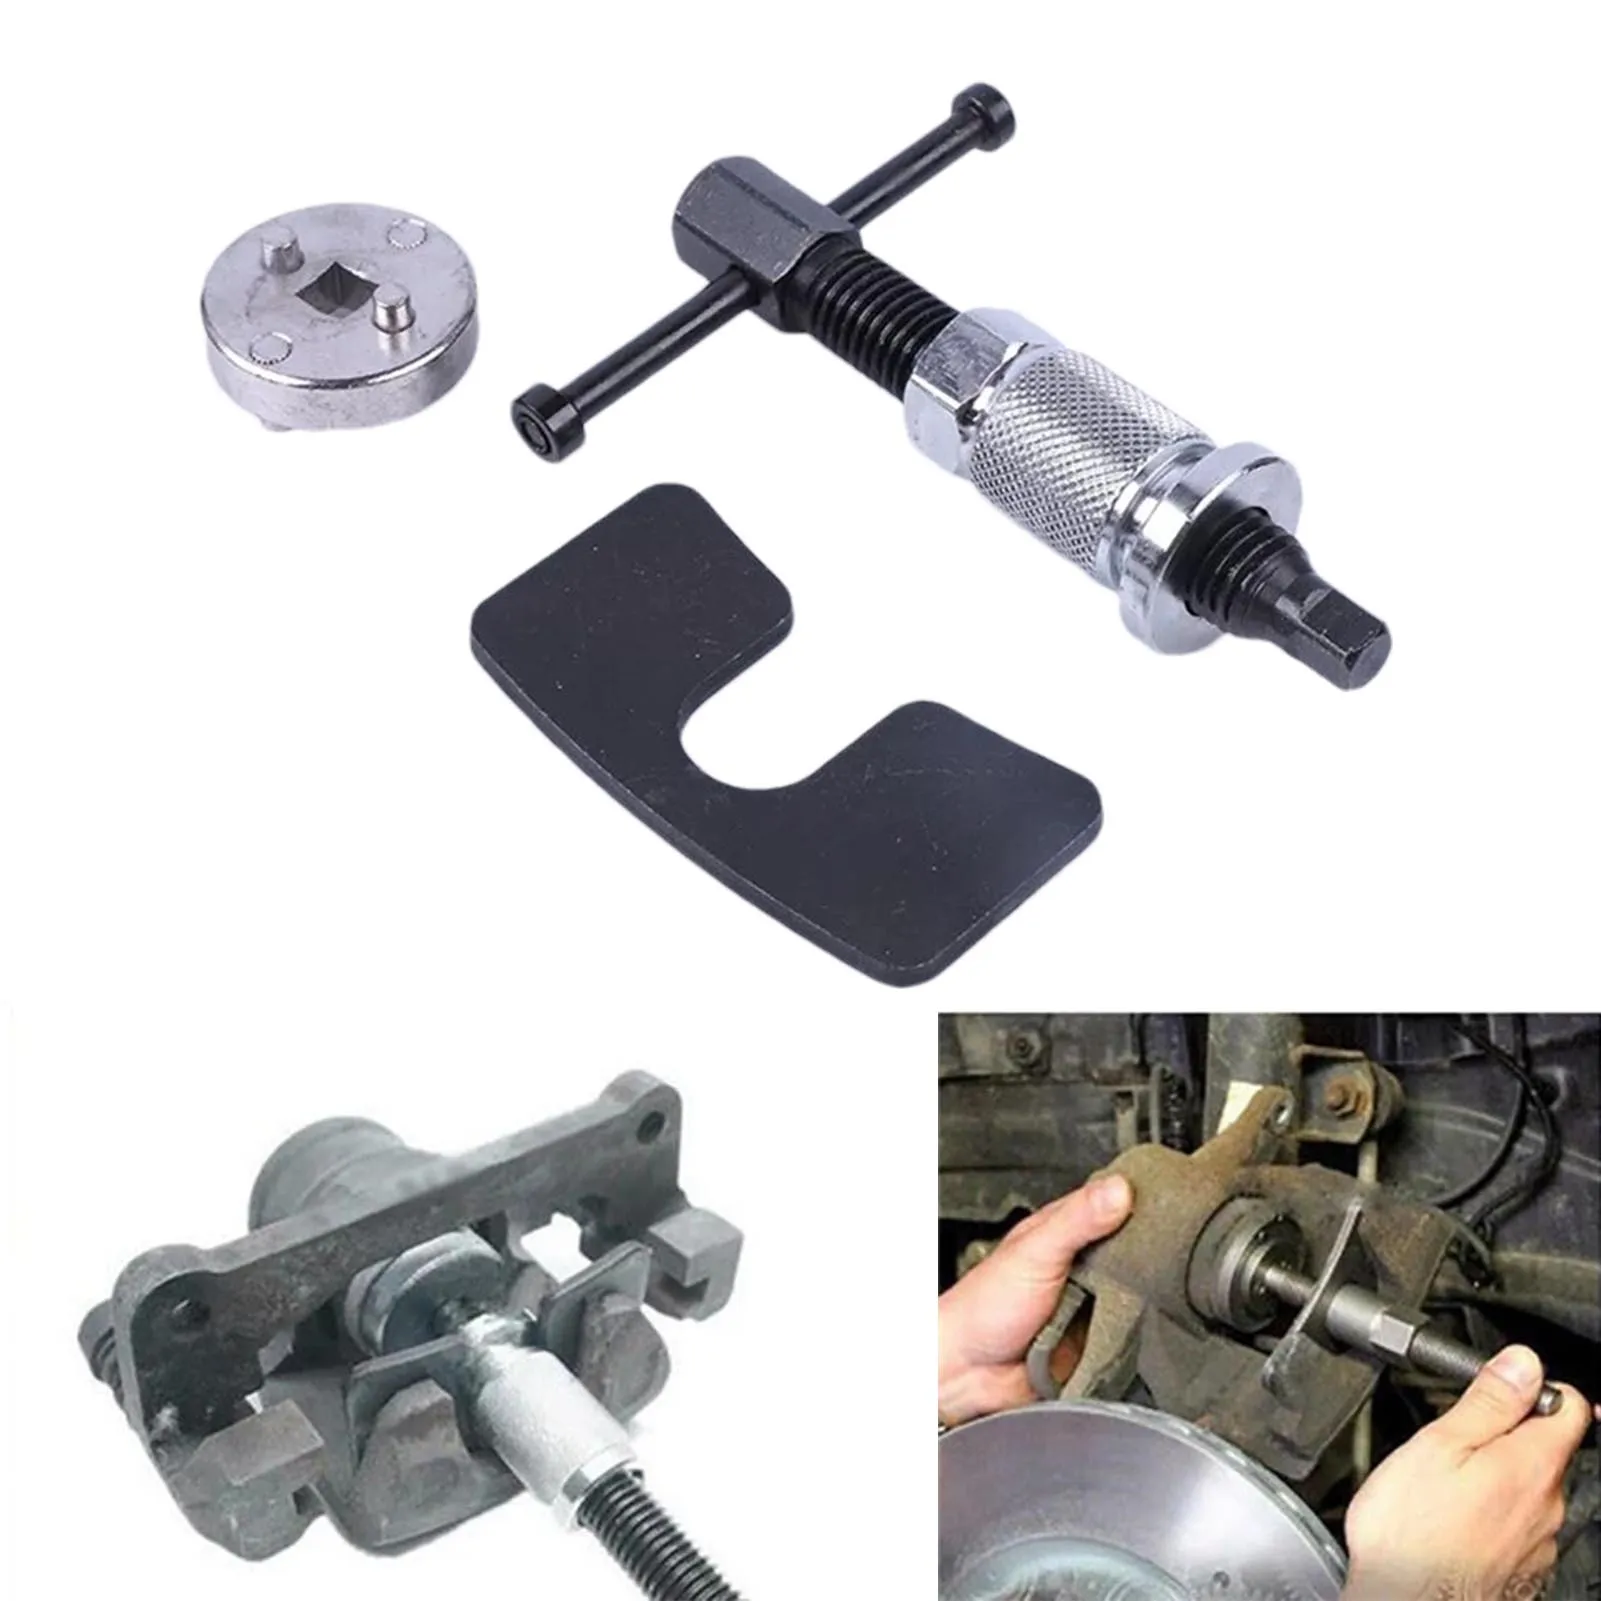 

Набор инструментов для тормозного насоса, комплект из 3 предметов для ремонта автомобильных дисковых тормозов, суппортов, поршней